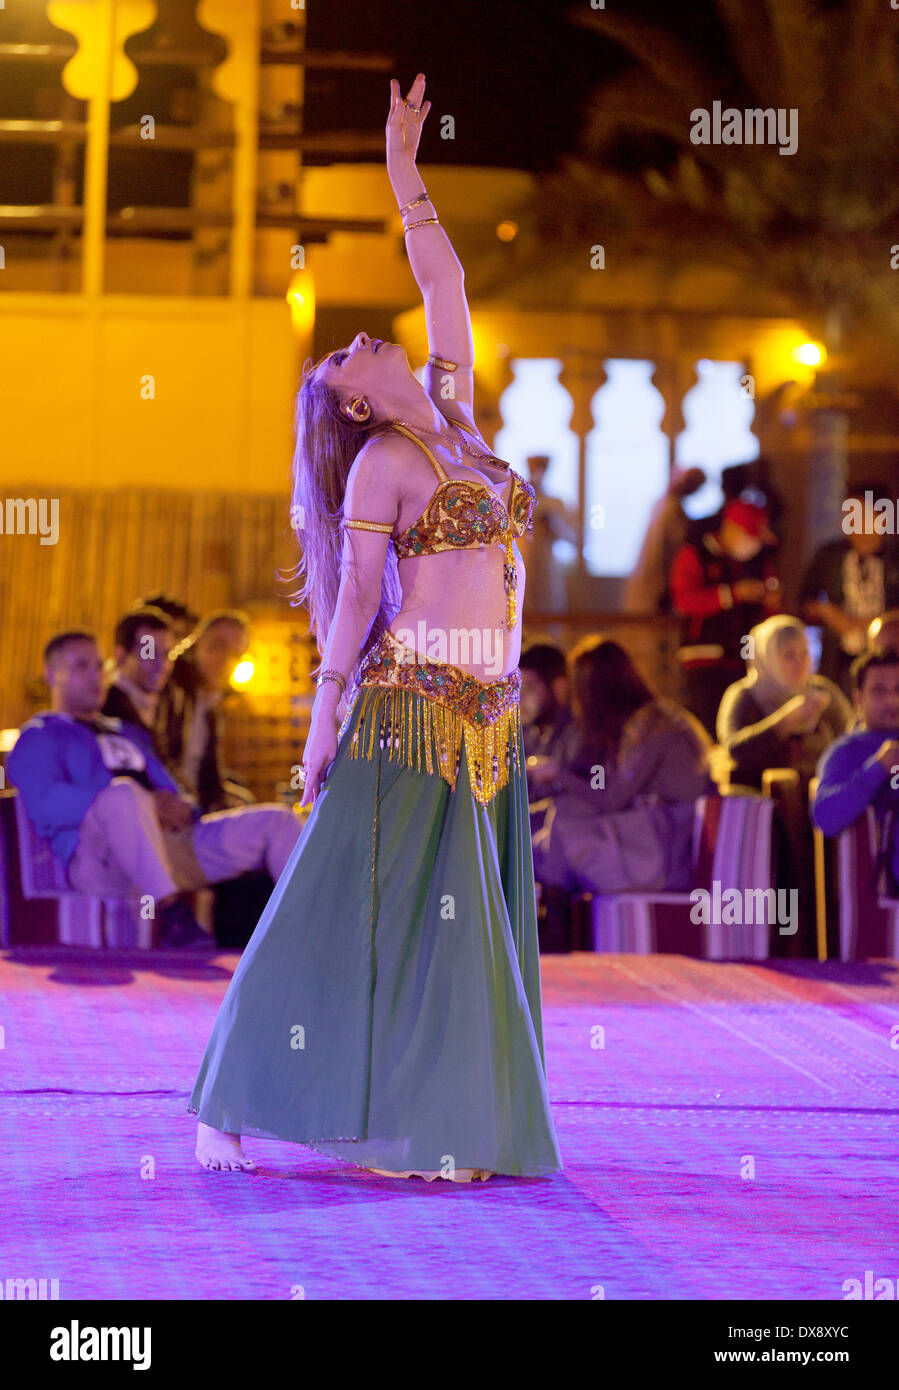 Una danzatrice del ventre danza una danza del ventre su un safari nel deserto, Dubai, Emirati Arabi Uniti, Emirati Arabi Uniti, Medio Oriente Foto Stock